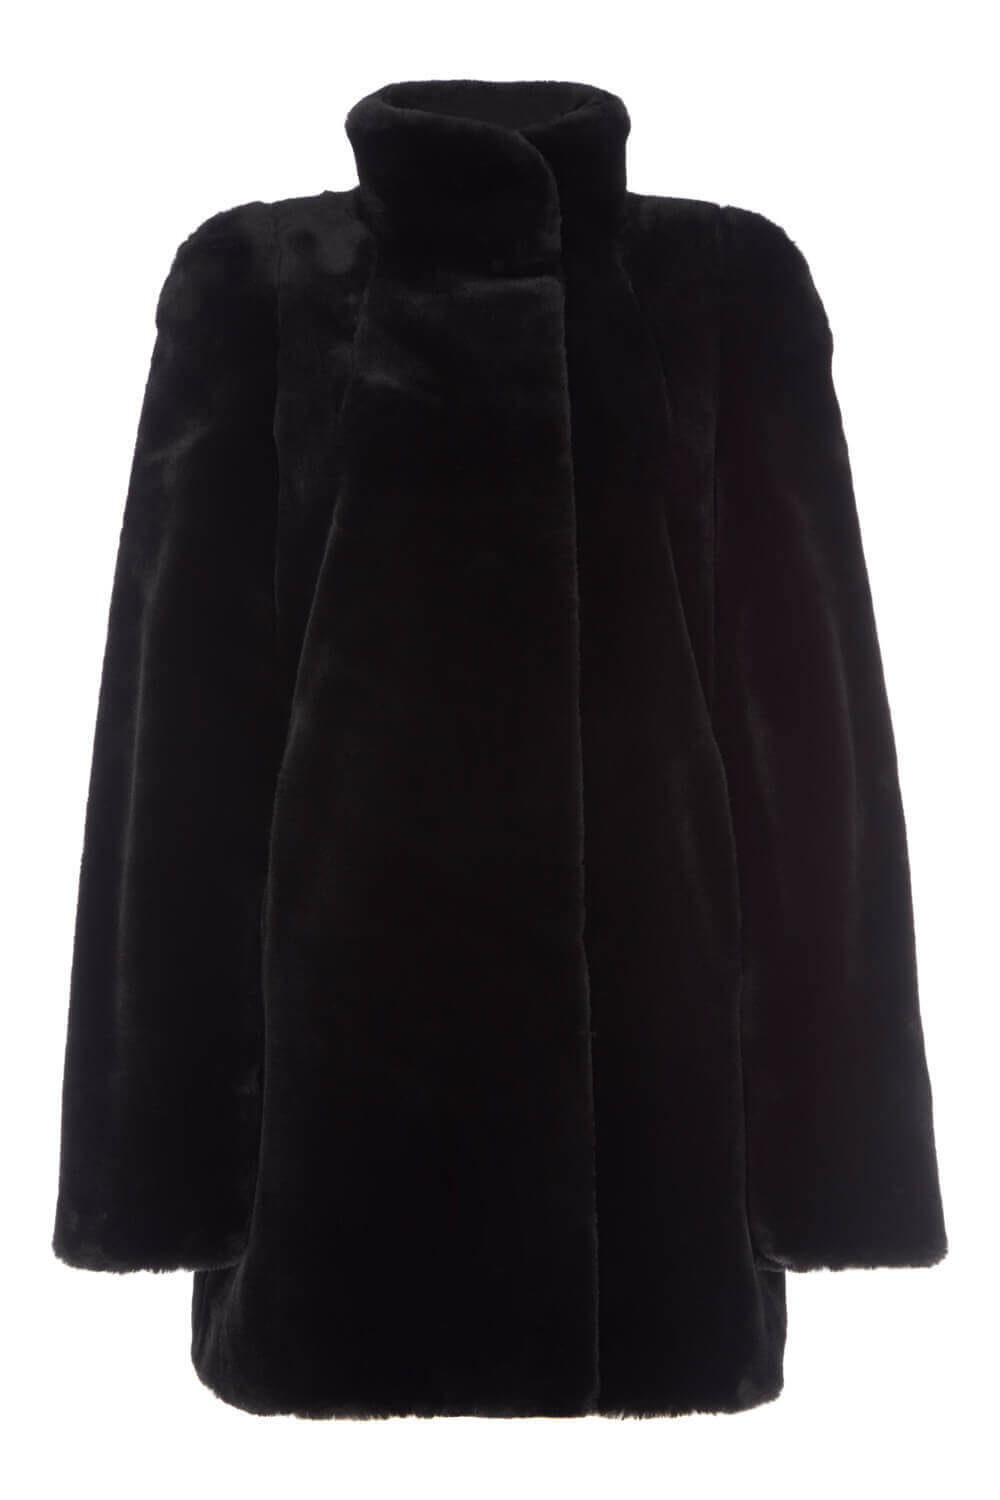 Faux Fur Swing Coat in Black - Roman Originals UK